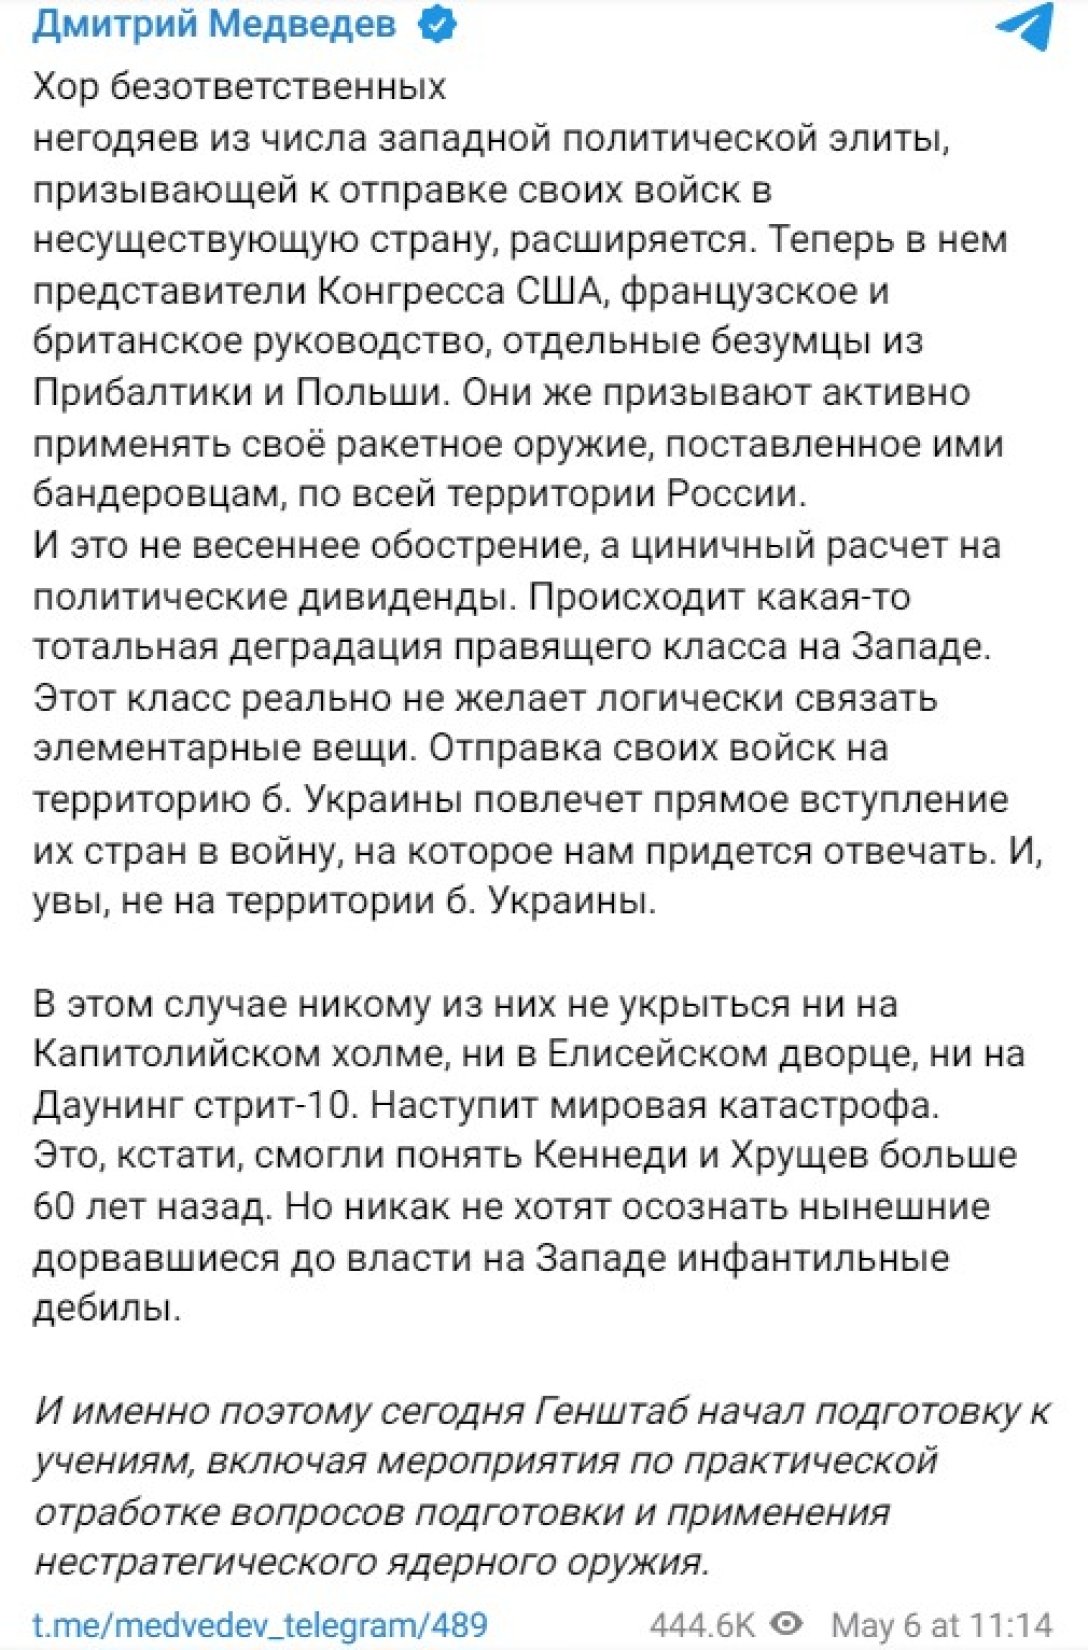 Ядерное оружие РФ, Дмитрий Медведев, 6 мая, заявление